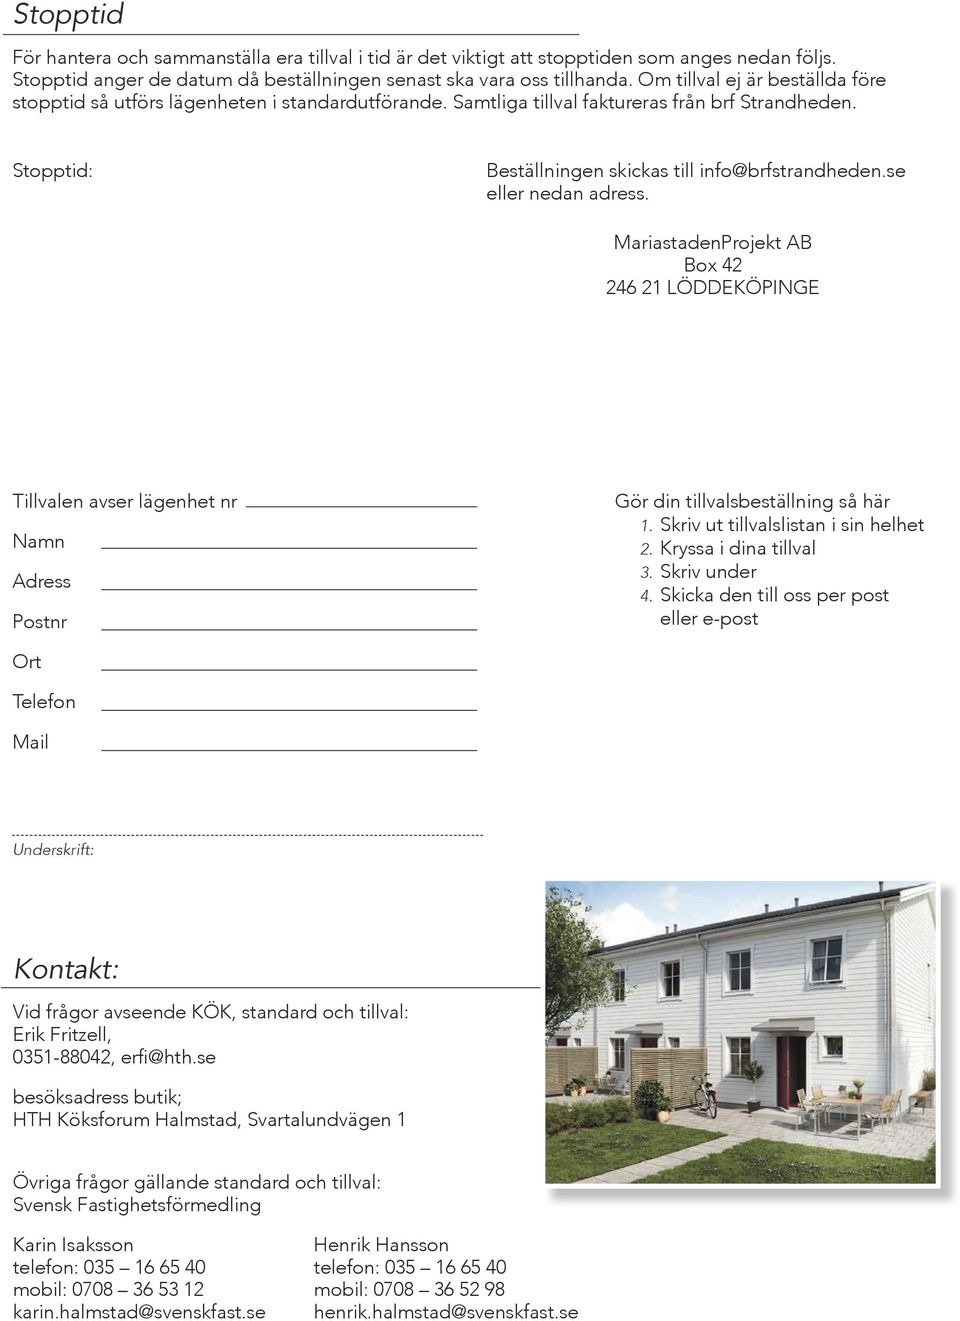 Stopptid: Hus 1-5, 2015-04-15 Hus 7-12, 2015-05-01 Hus 13-21, 2015-05-15 Beställningen skickas till info@brfstrandheden.se eller nedan adress.